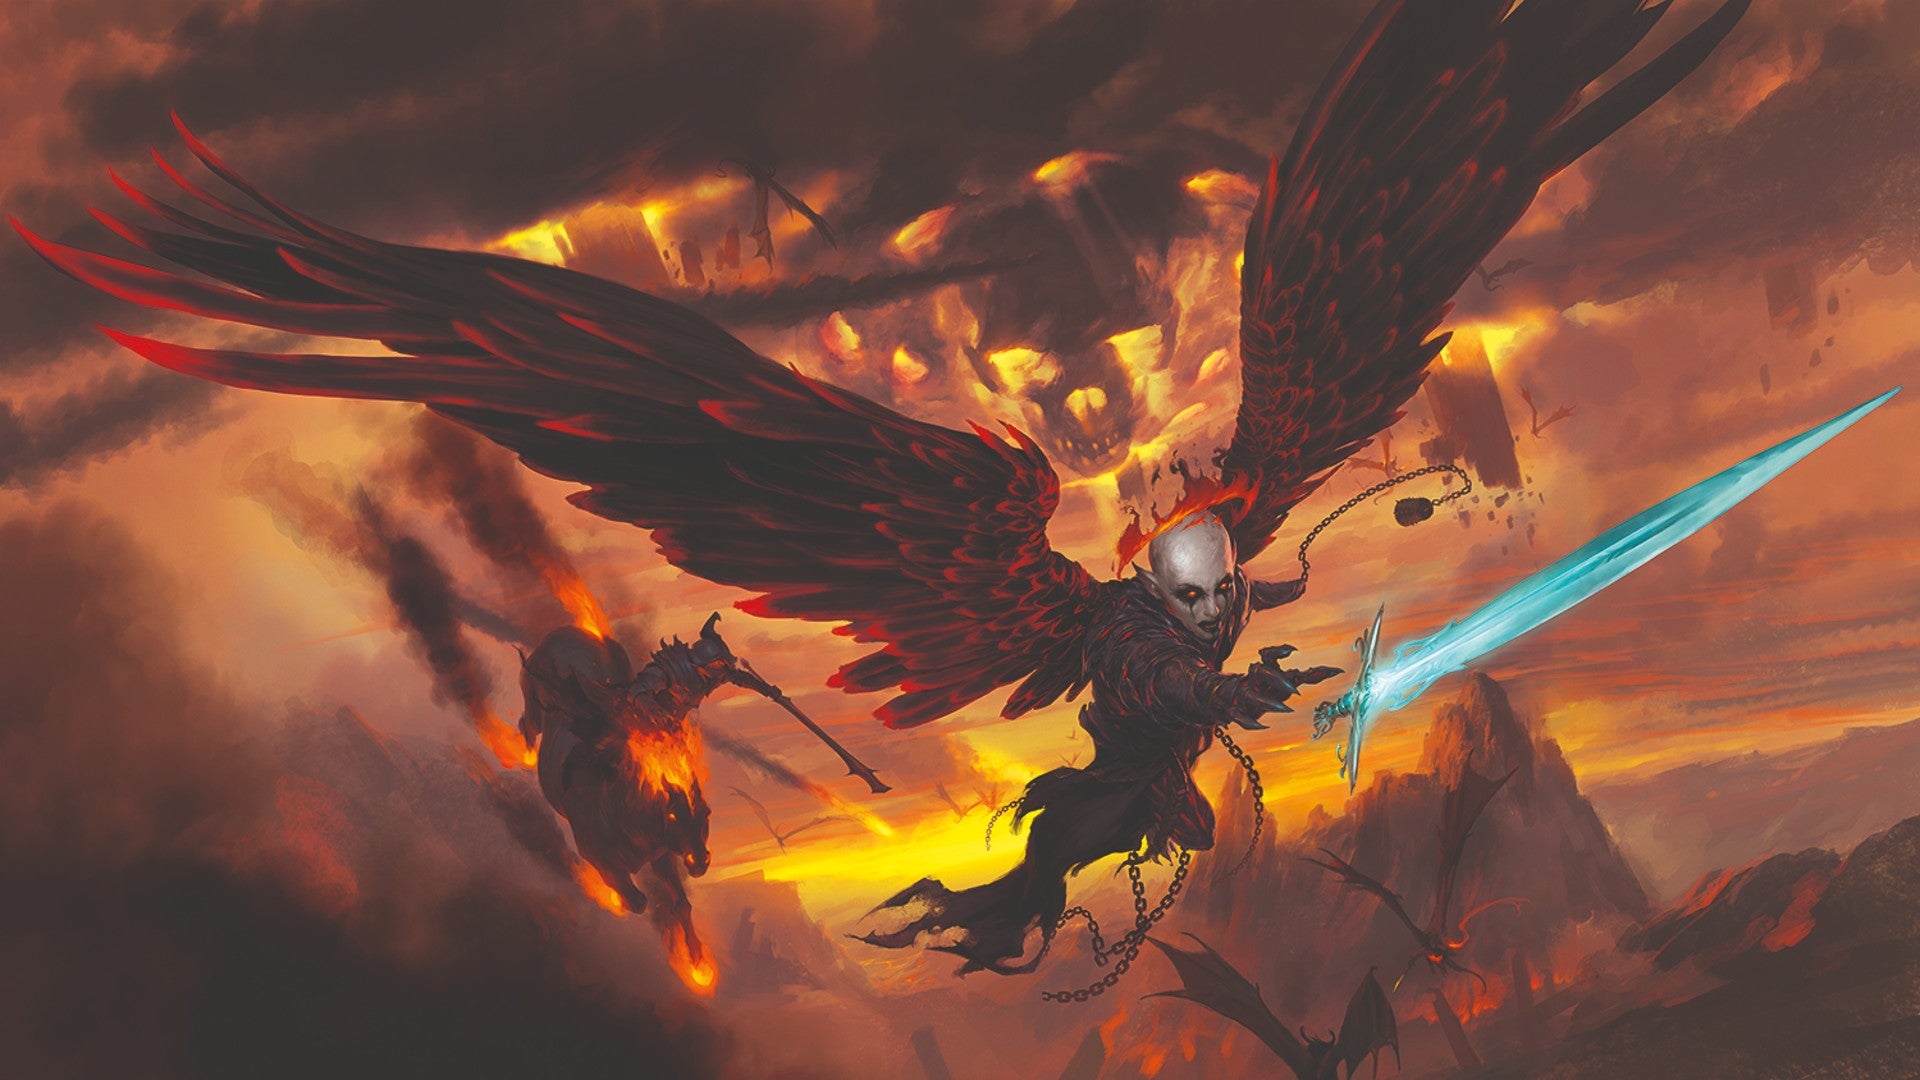 Обложка Baldur'S Gate: Descent Into Avernus, На Которой Крылатый Демон Летит Через Ад, А Другой Едет Верхом На Огненном Коне.